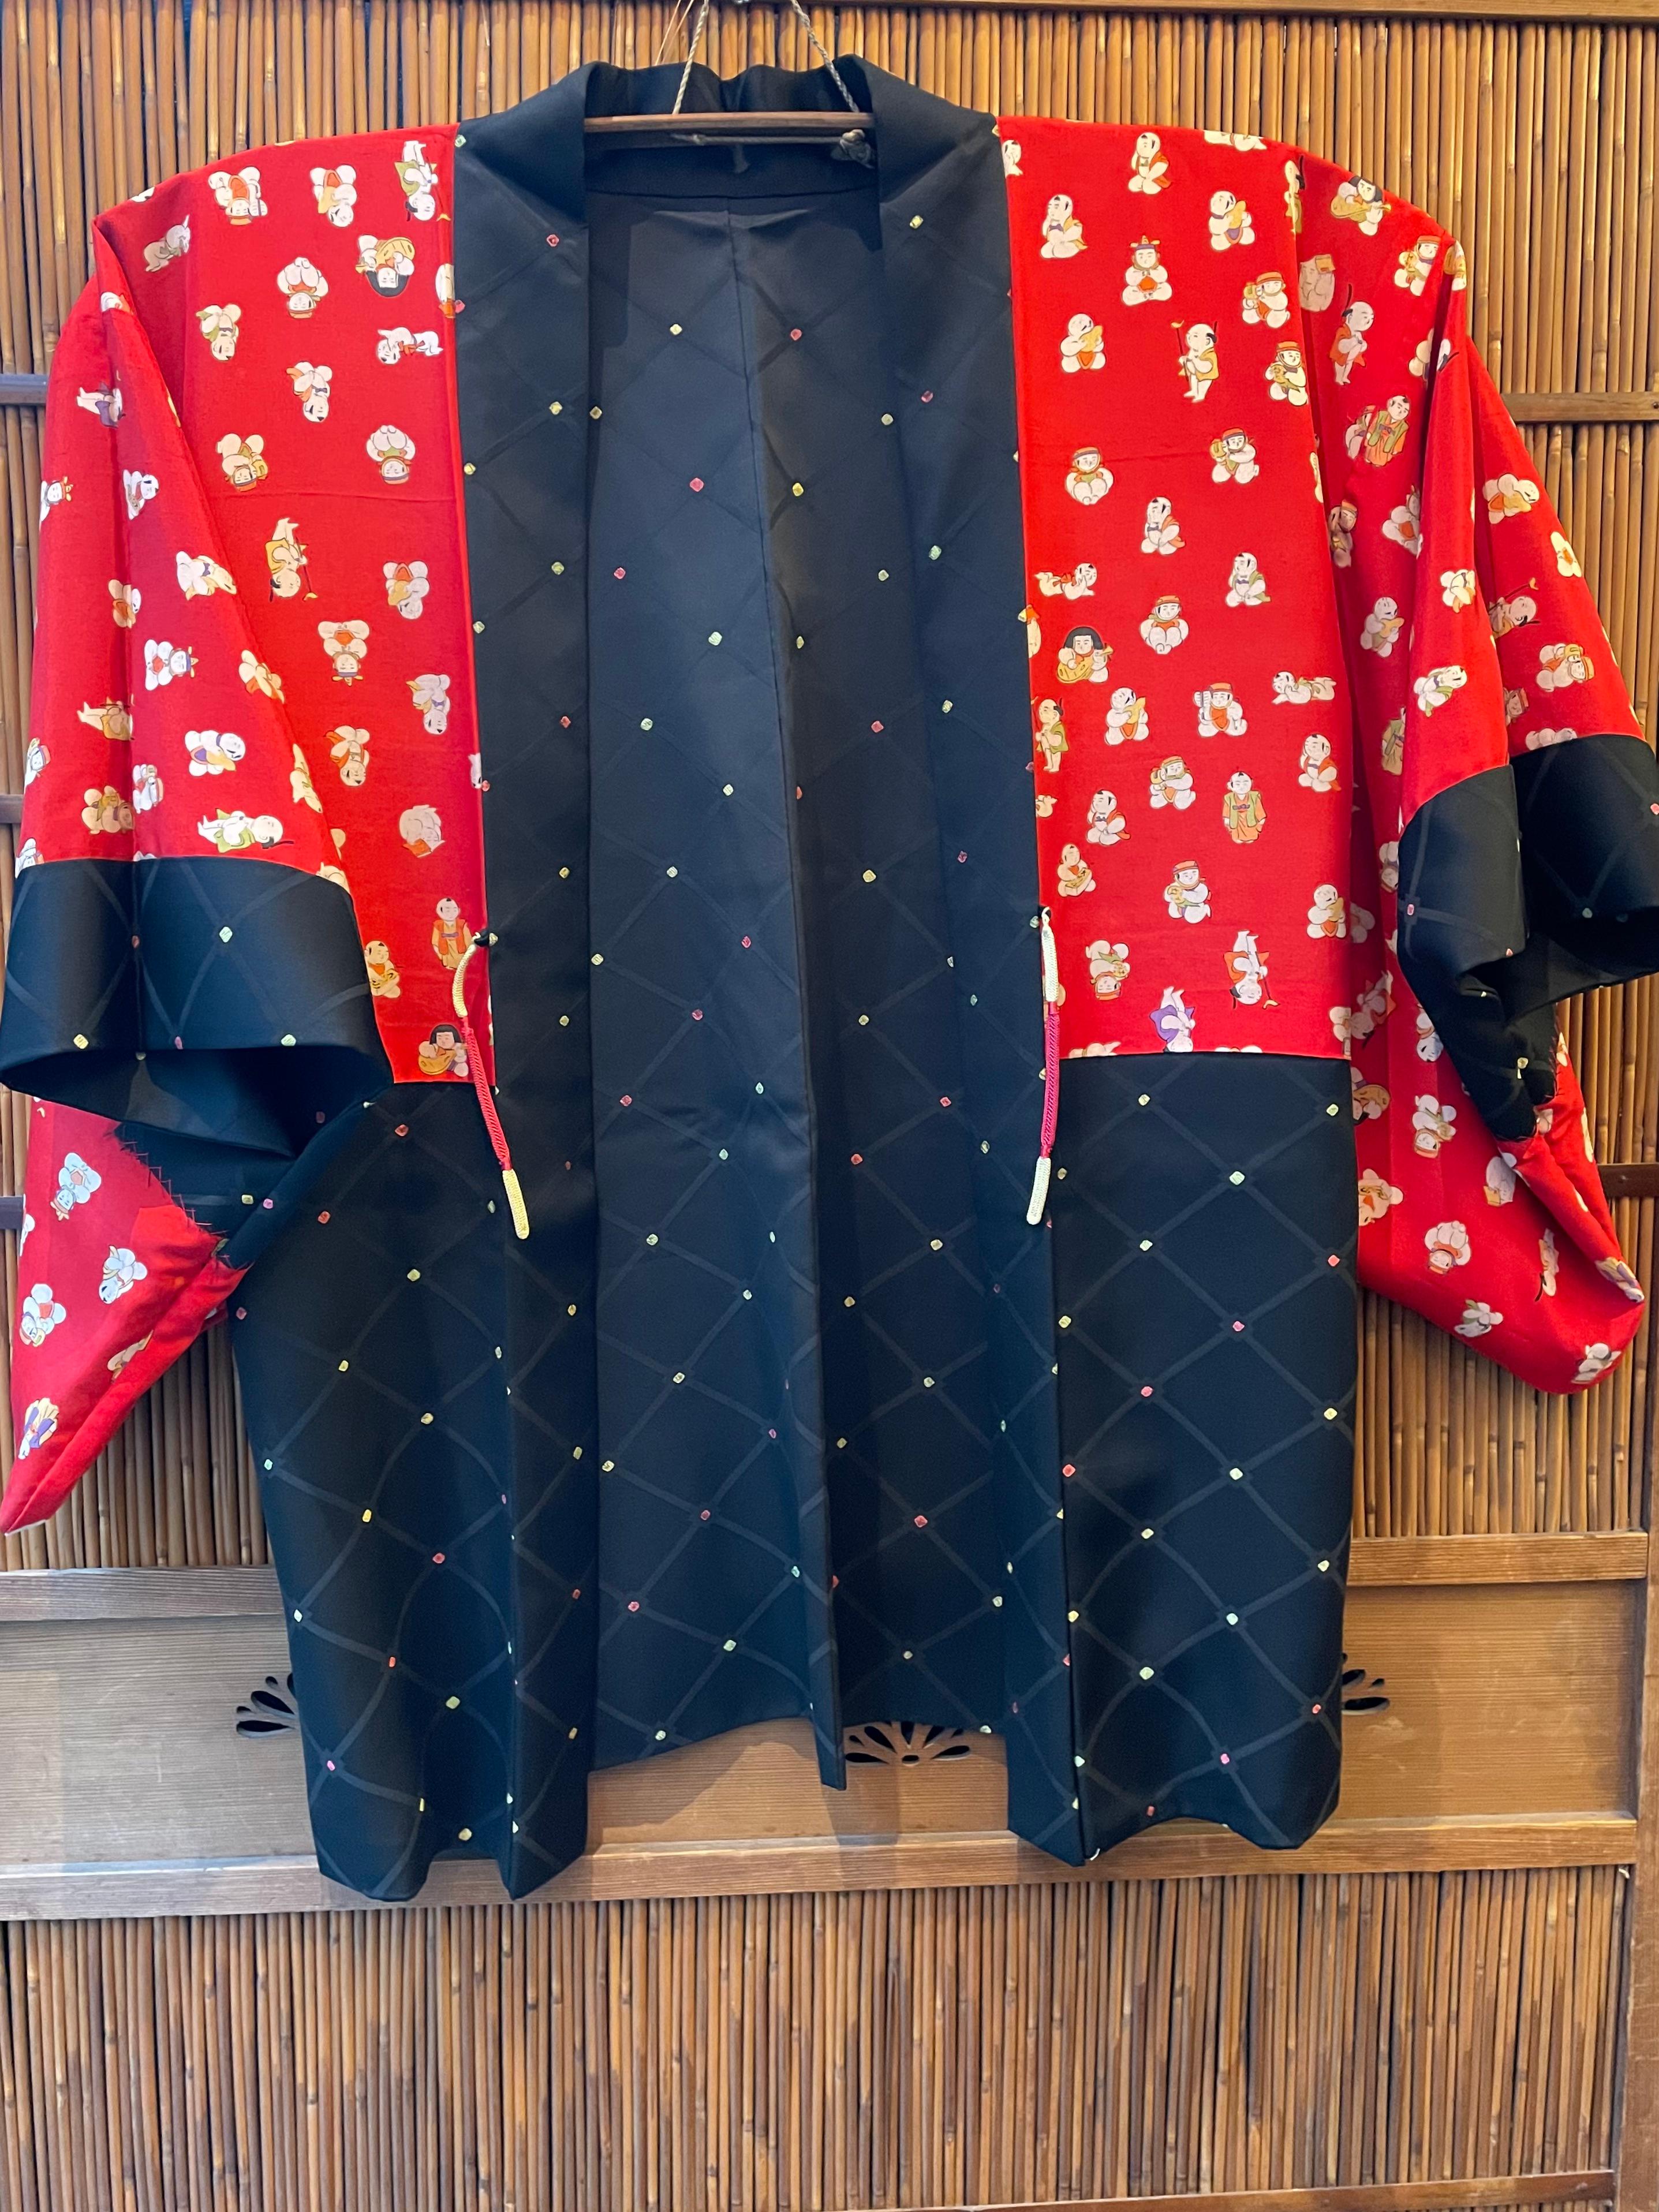 Dies ist eine Seidenjacke, die in Japan hergestellt wurde.
Es wurde in der Showa-Ära in den 1960er Jahren hergestellt.

Der Haori ist eine traditionelle japanische hüft- oder oberschenkellange Jacke, die über einem Kimono getragen wird. Der Haori